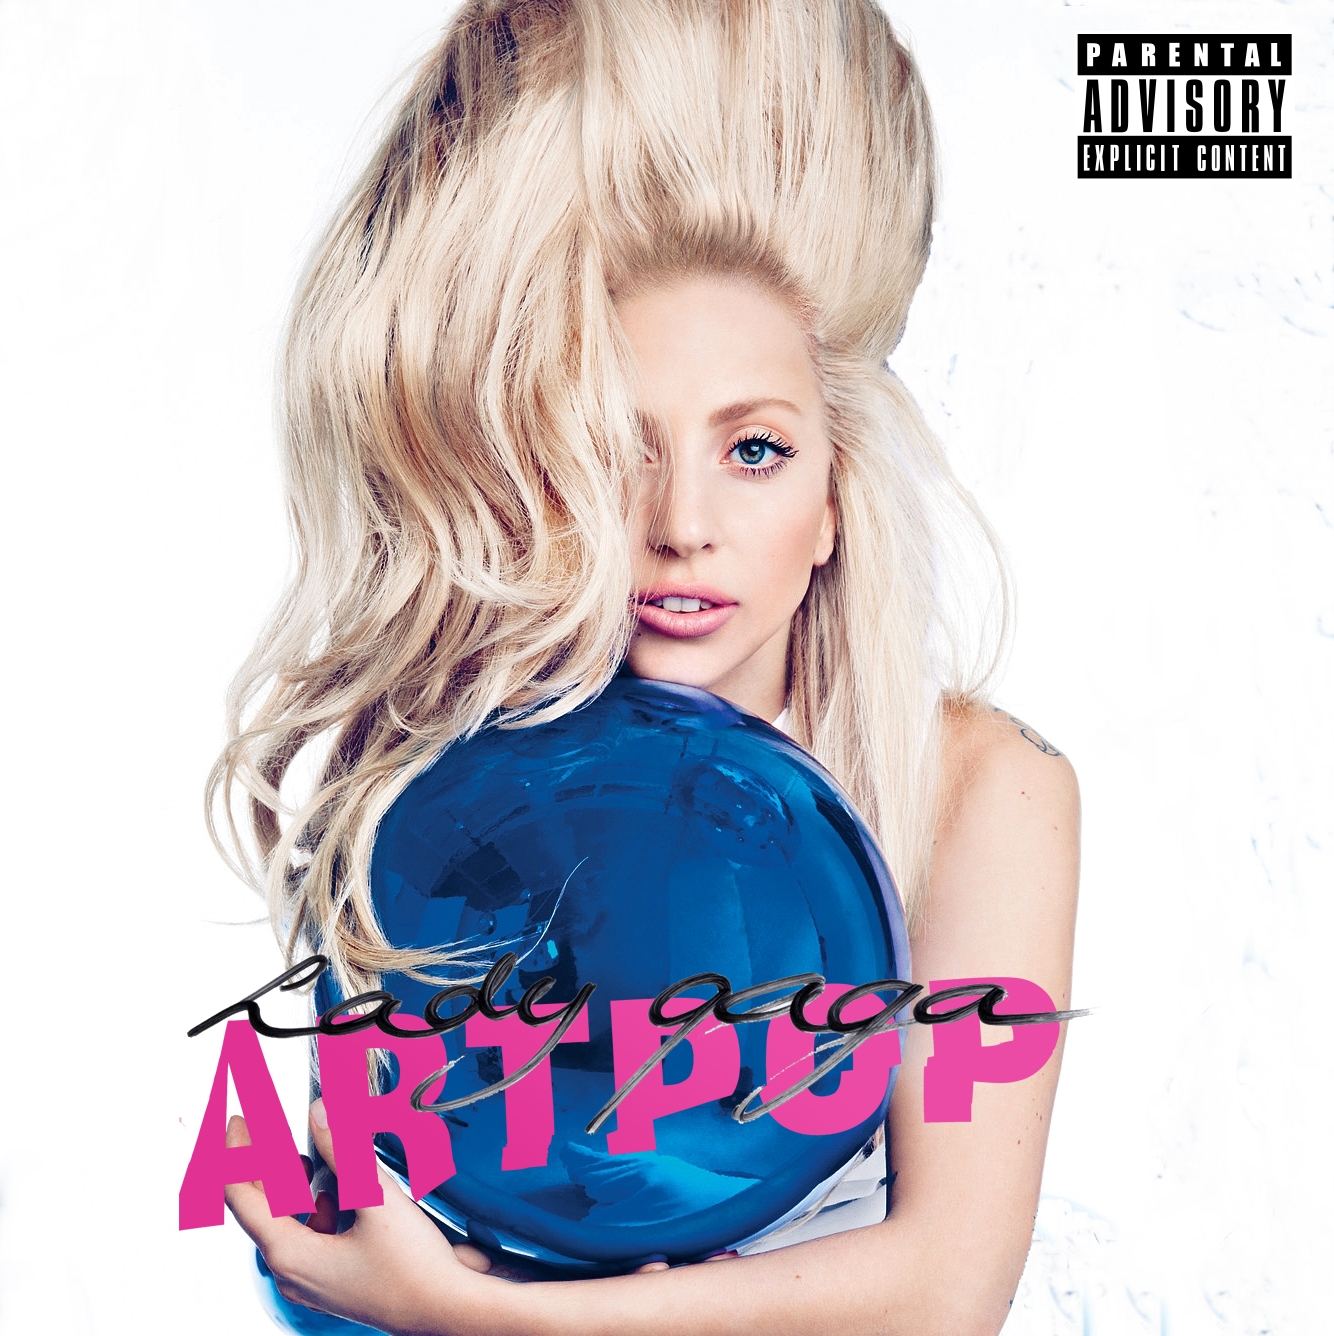 Nackt und schrill: Lady Gagas Artpop-Cover ist da 